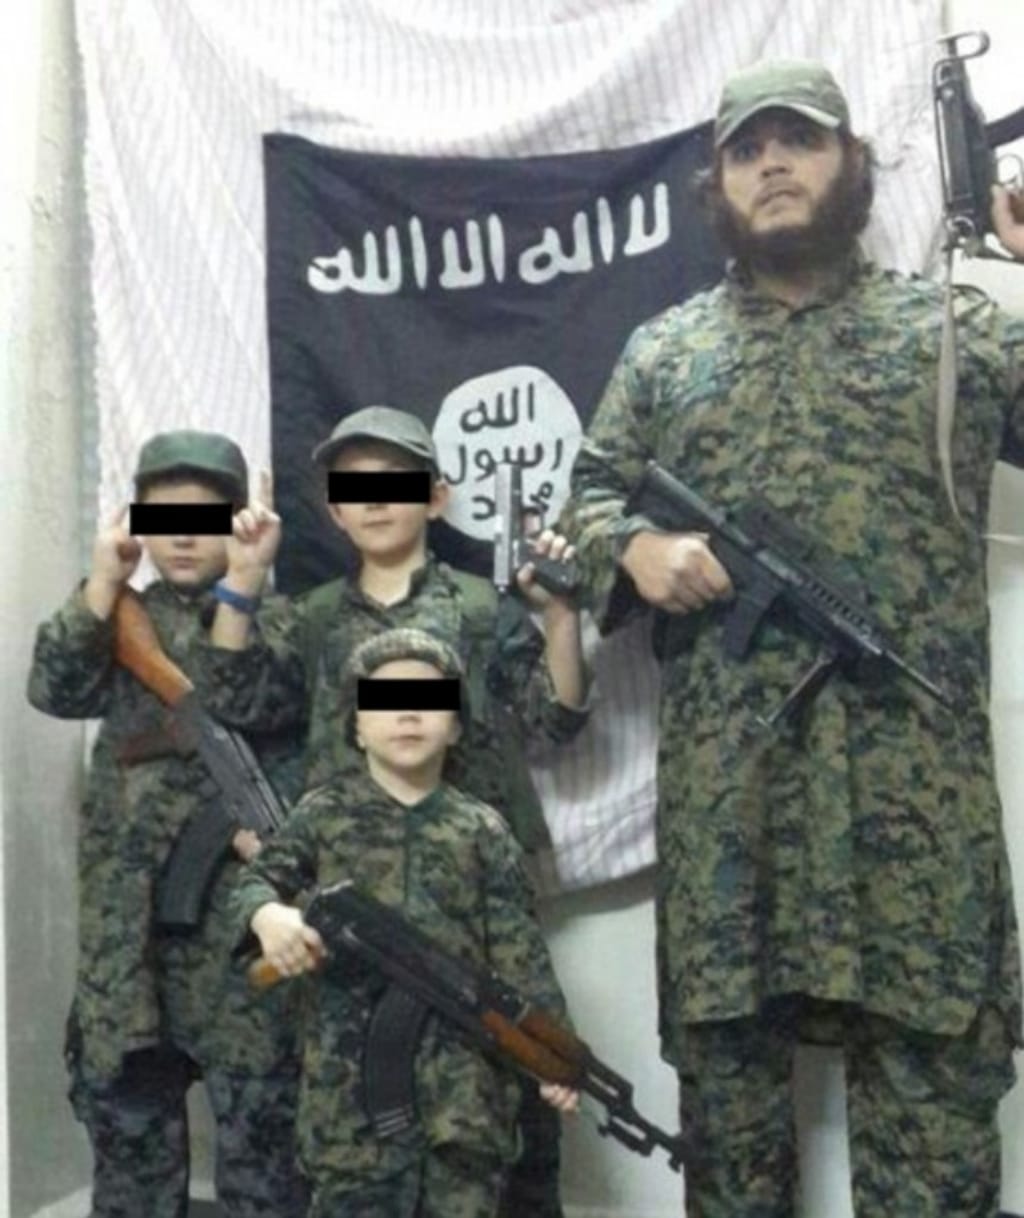 Jihadista australiano causa polémica nas redes sociais